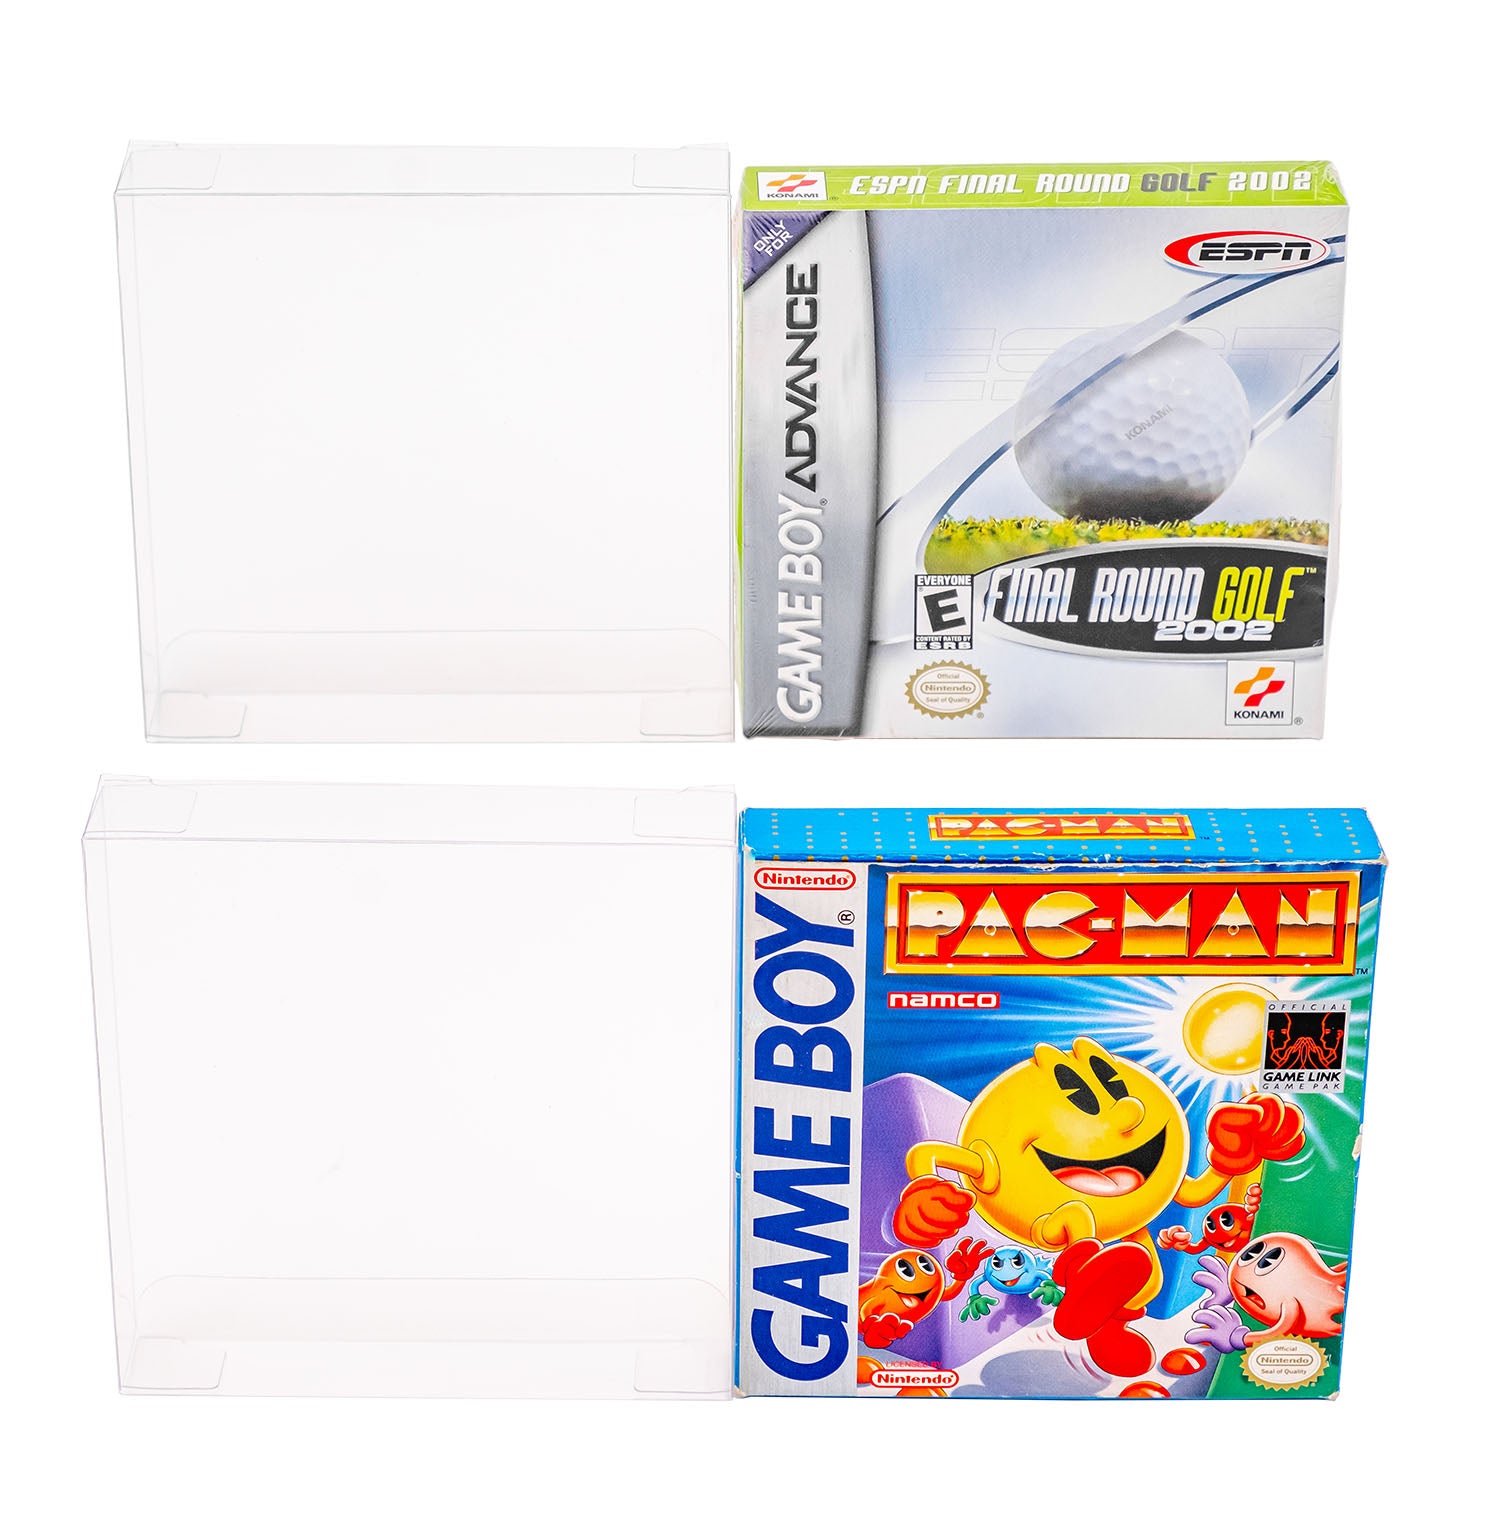 Nintendo Game Boy & Game Boy Advance Retail Box Protectors - Wholesale